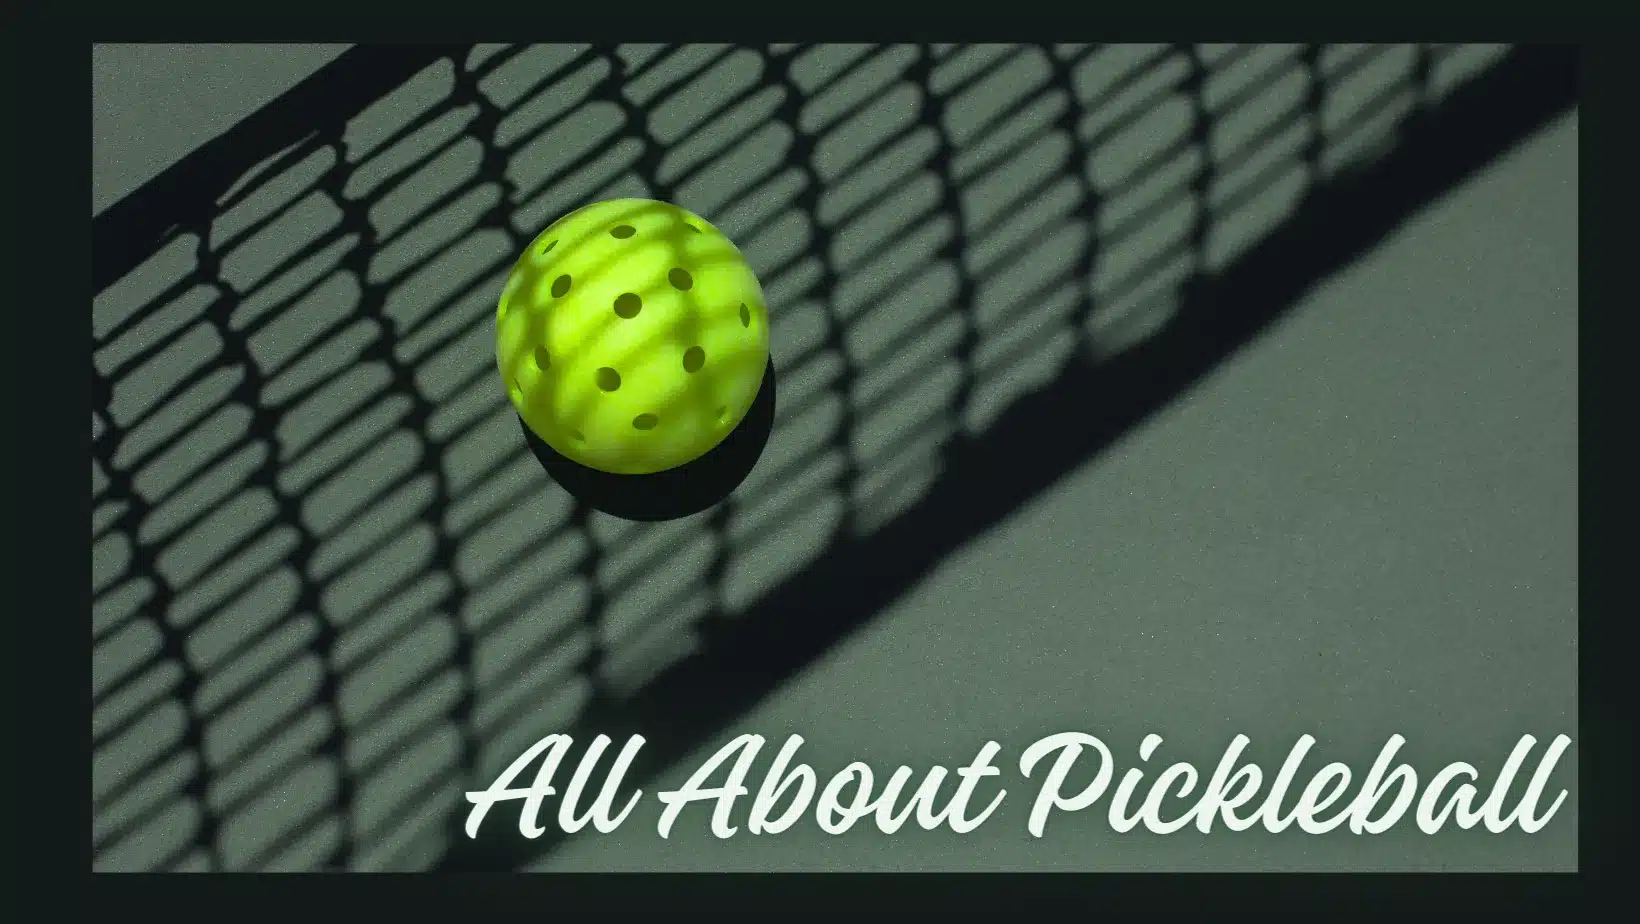 Pickleball rules for singles